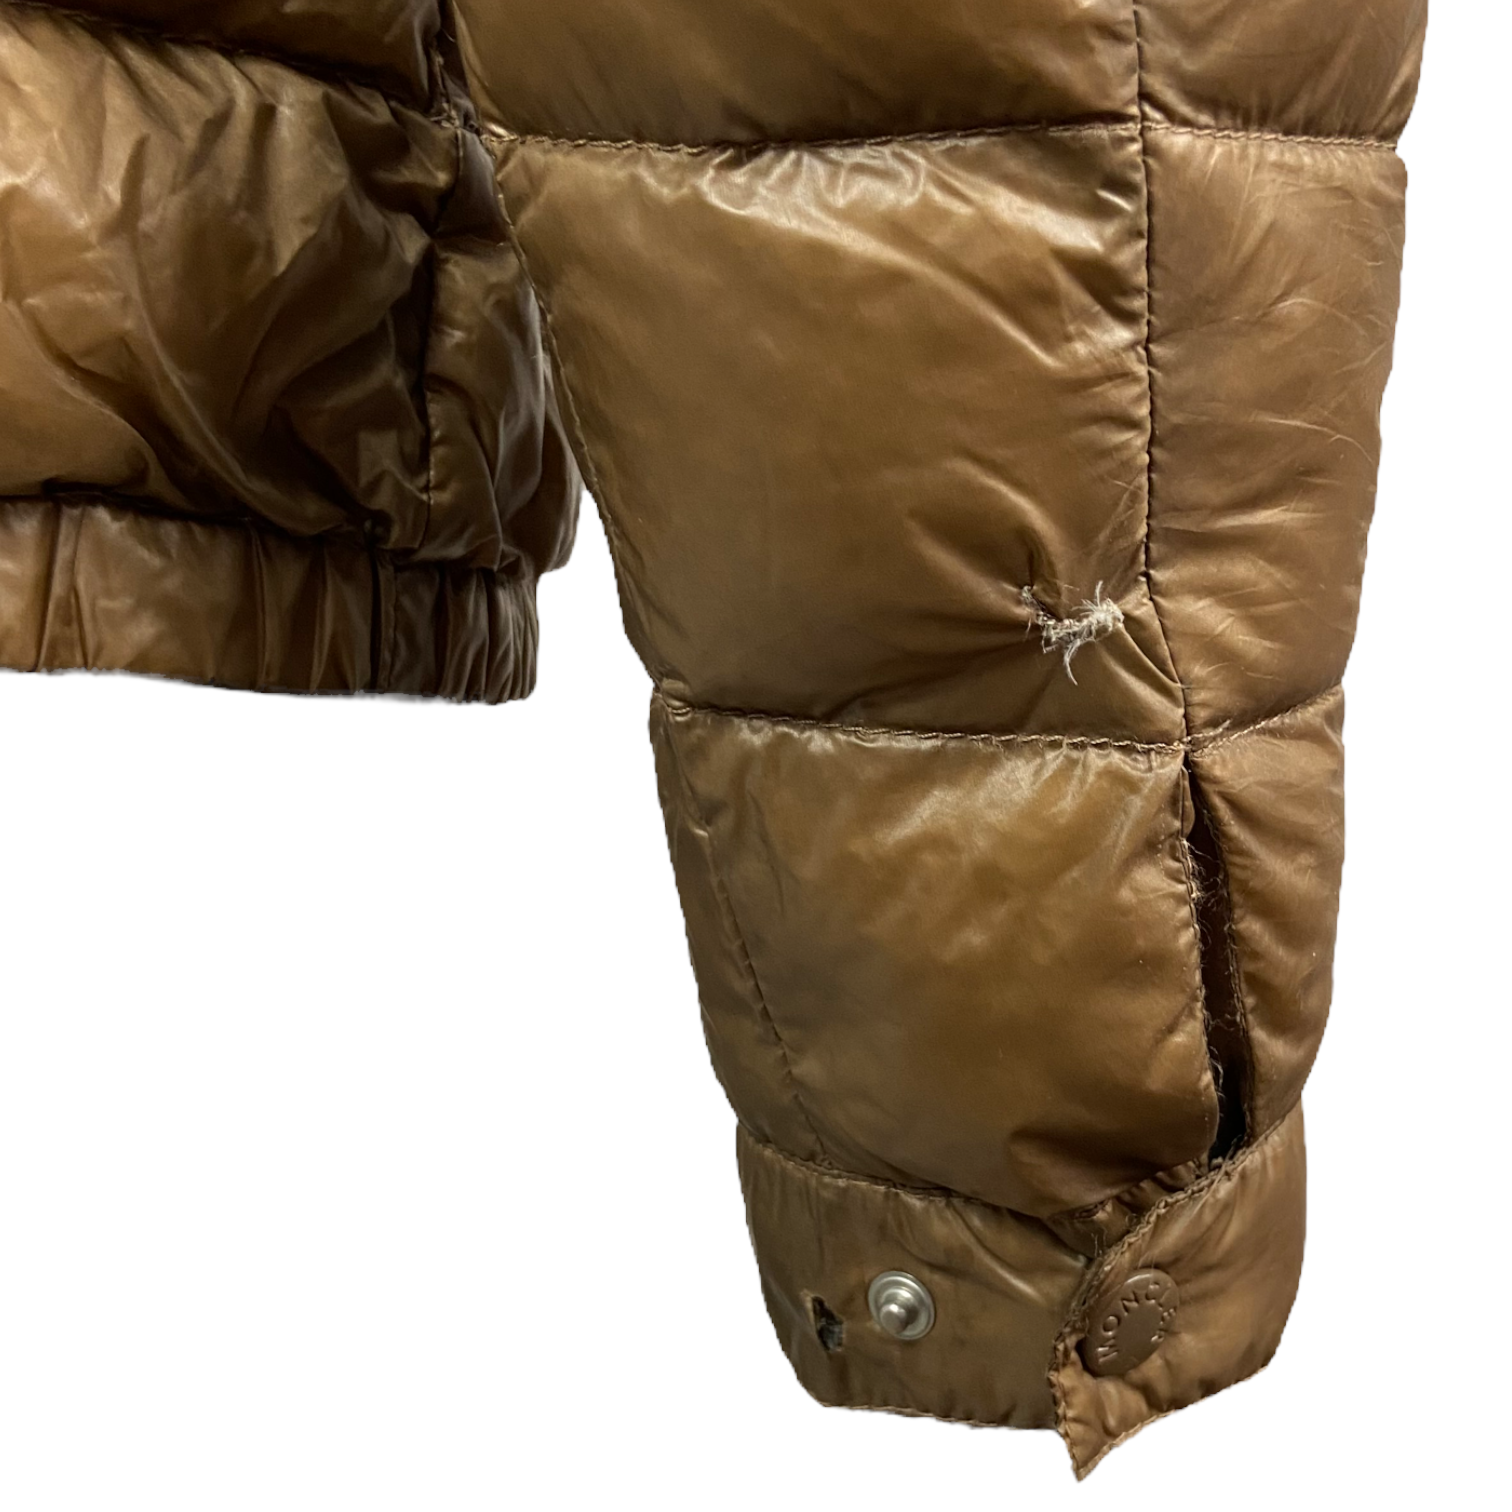 Moncler Acorus Down Jacket - Size 2 (S/M)